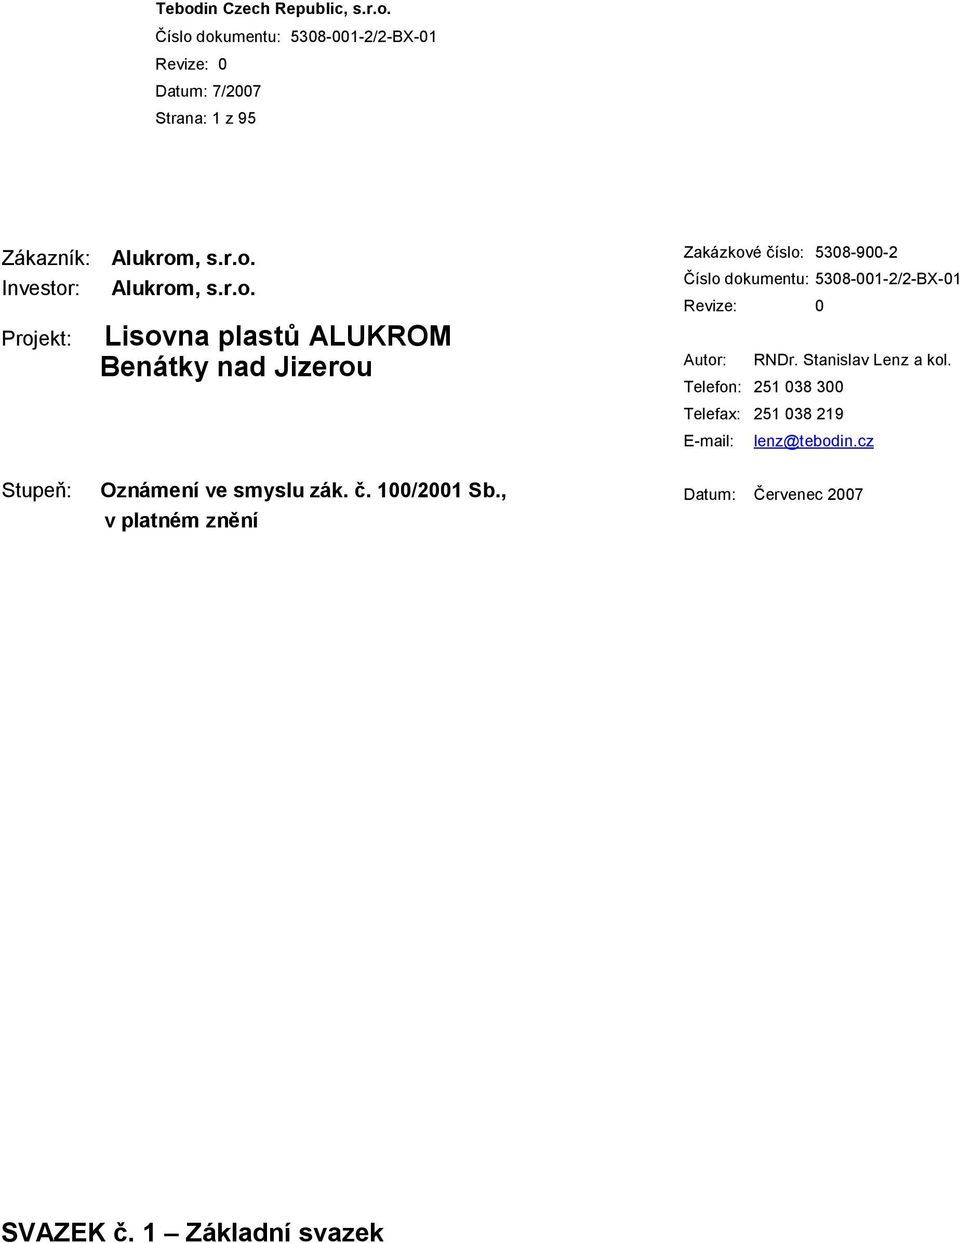 Investor: Alukrom Projekt: Lisovna plastů ALUKROM Benátky nad Jizerou Zakázkové číslo: